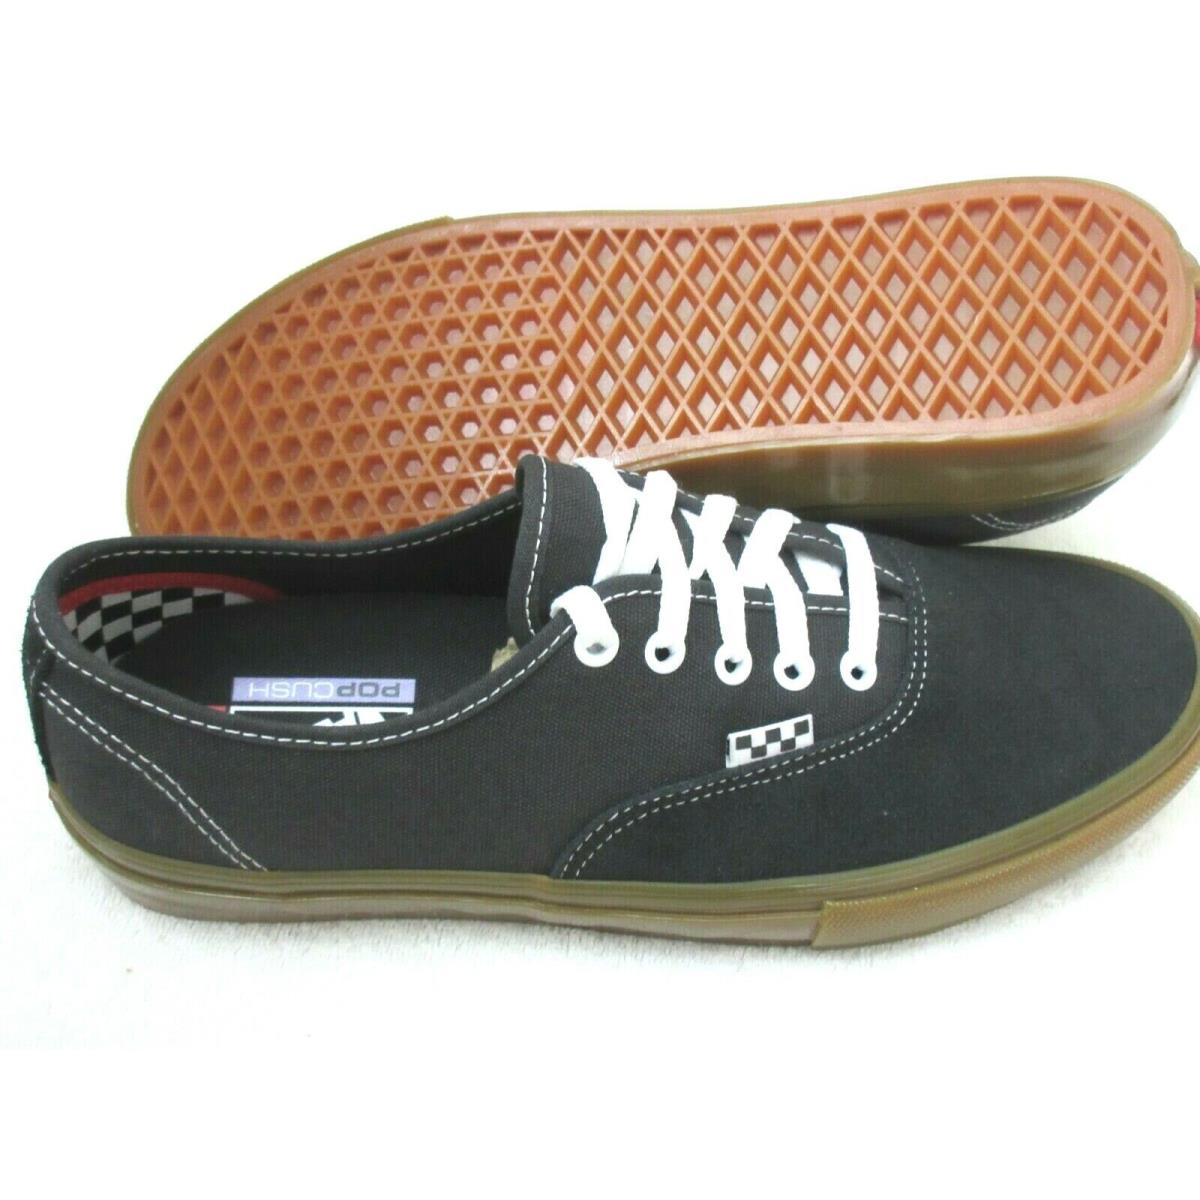 Vans Skate Authentic Men`s Skate Black Raven Gum Bottom Suede Canvas Shoes Size 13